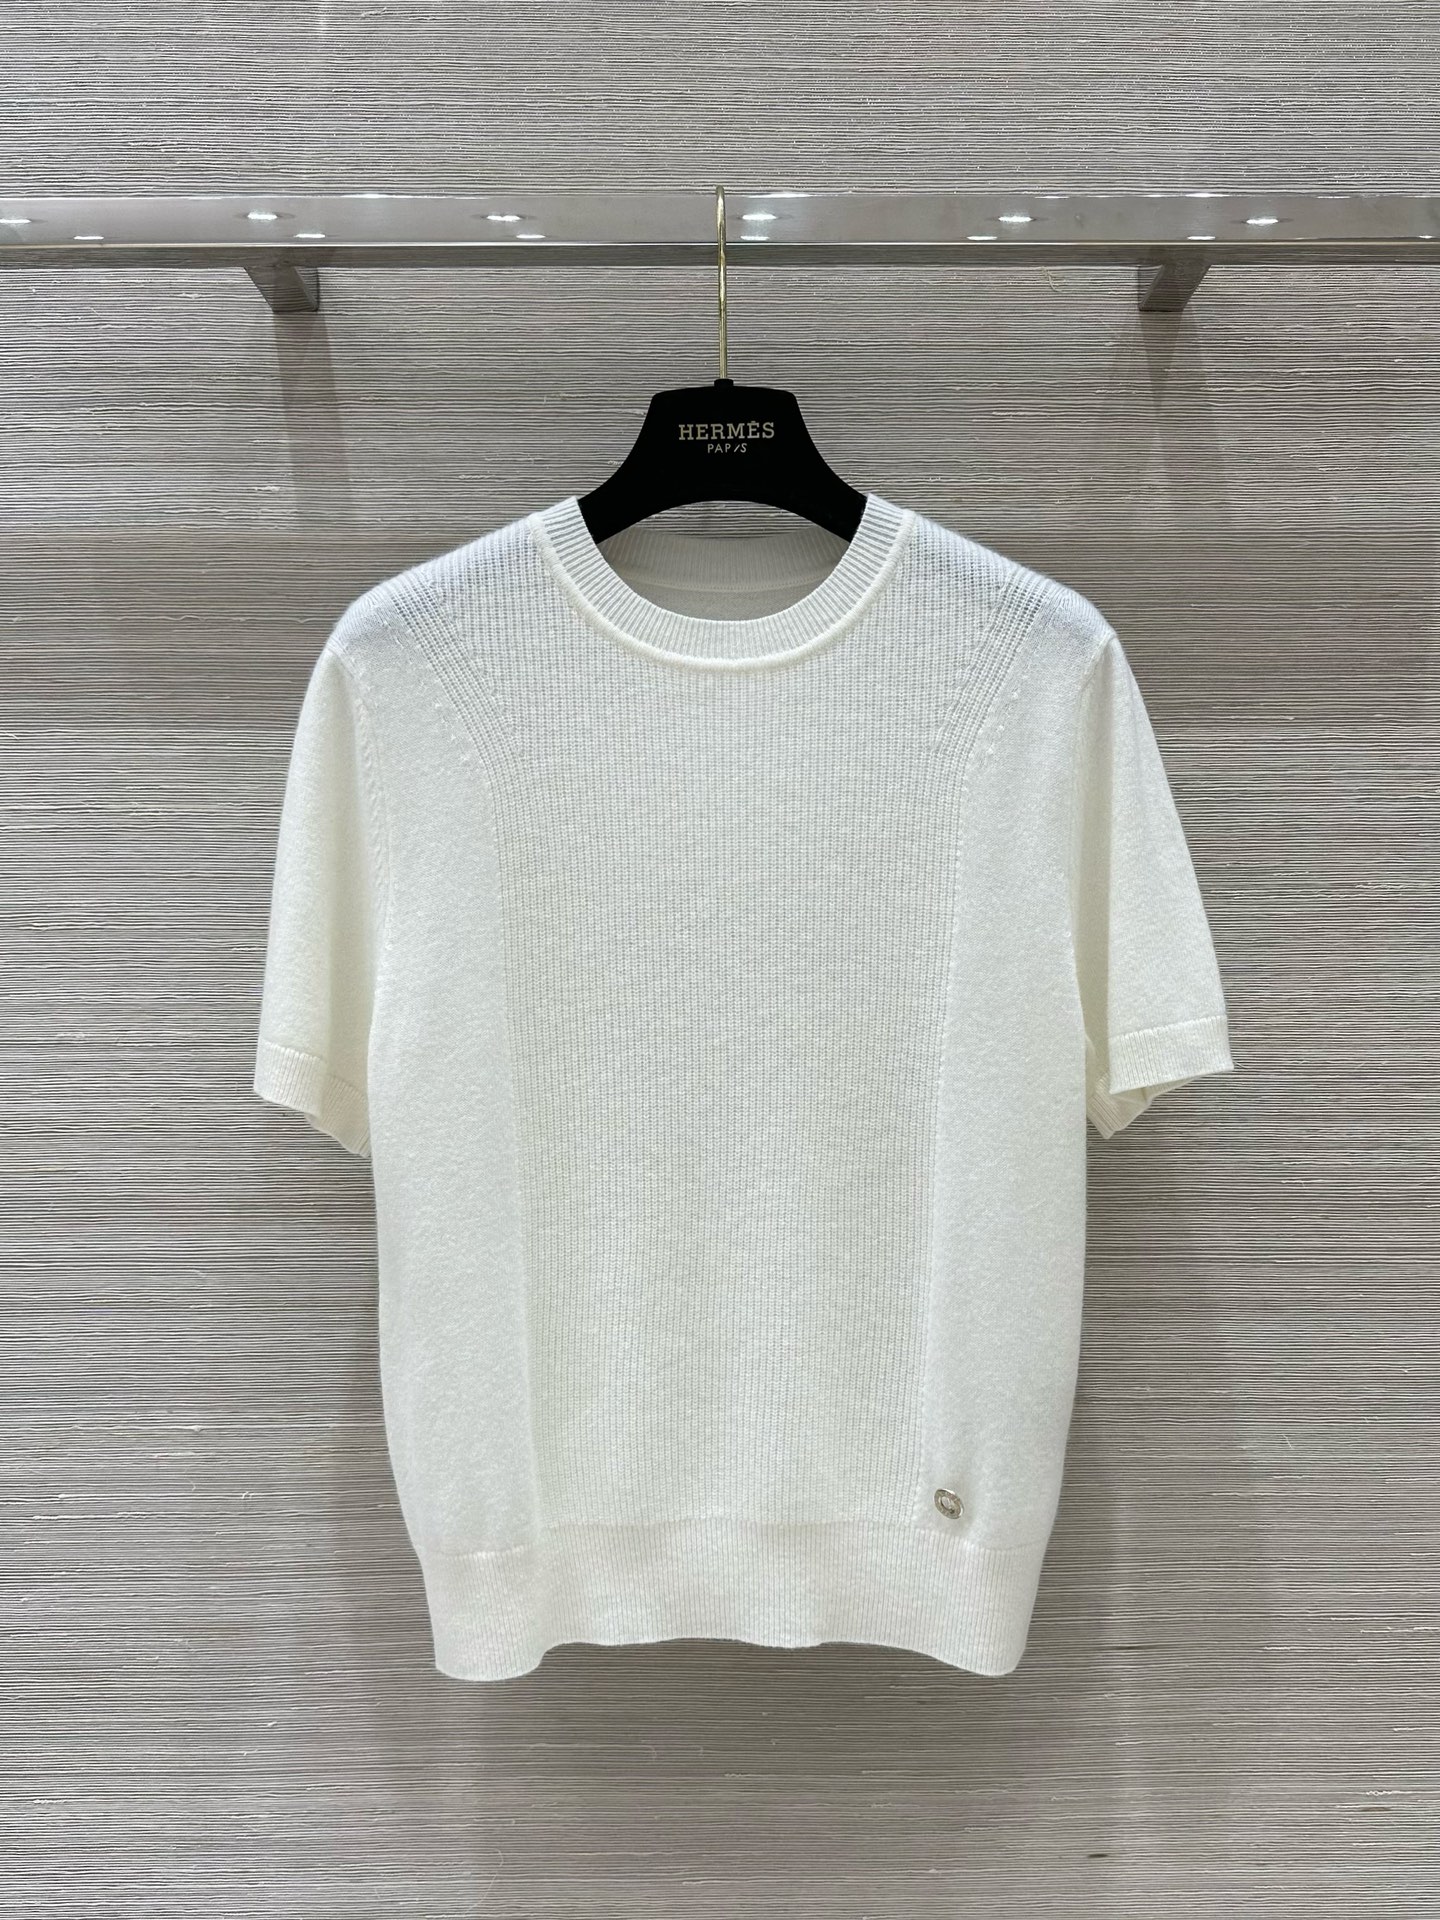 Hermes Roupa Camiseta Branco Caxemira Colecção de Outono Manga Curta